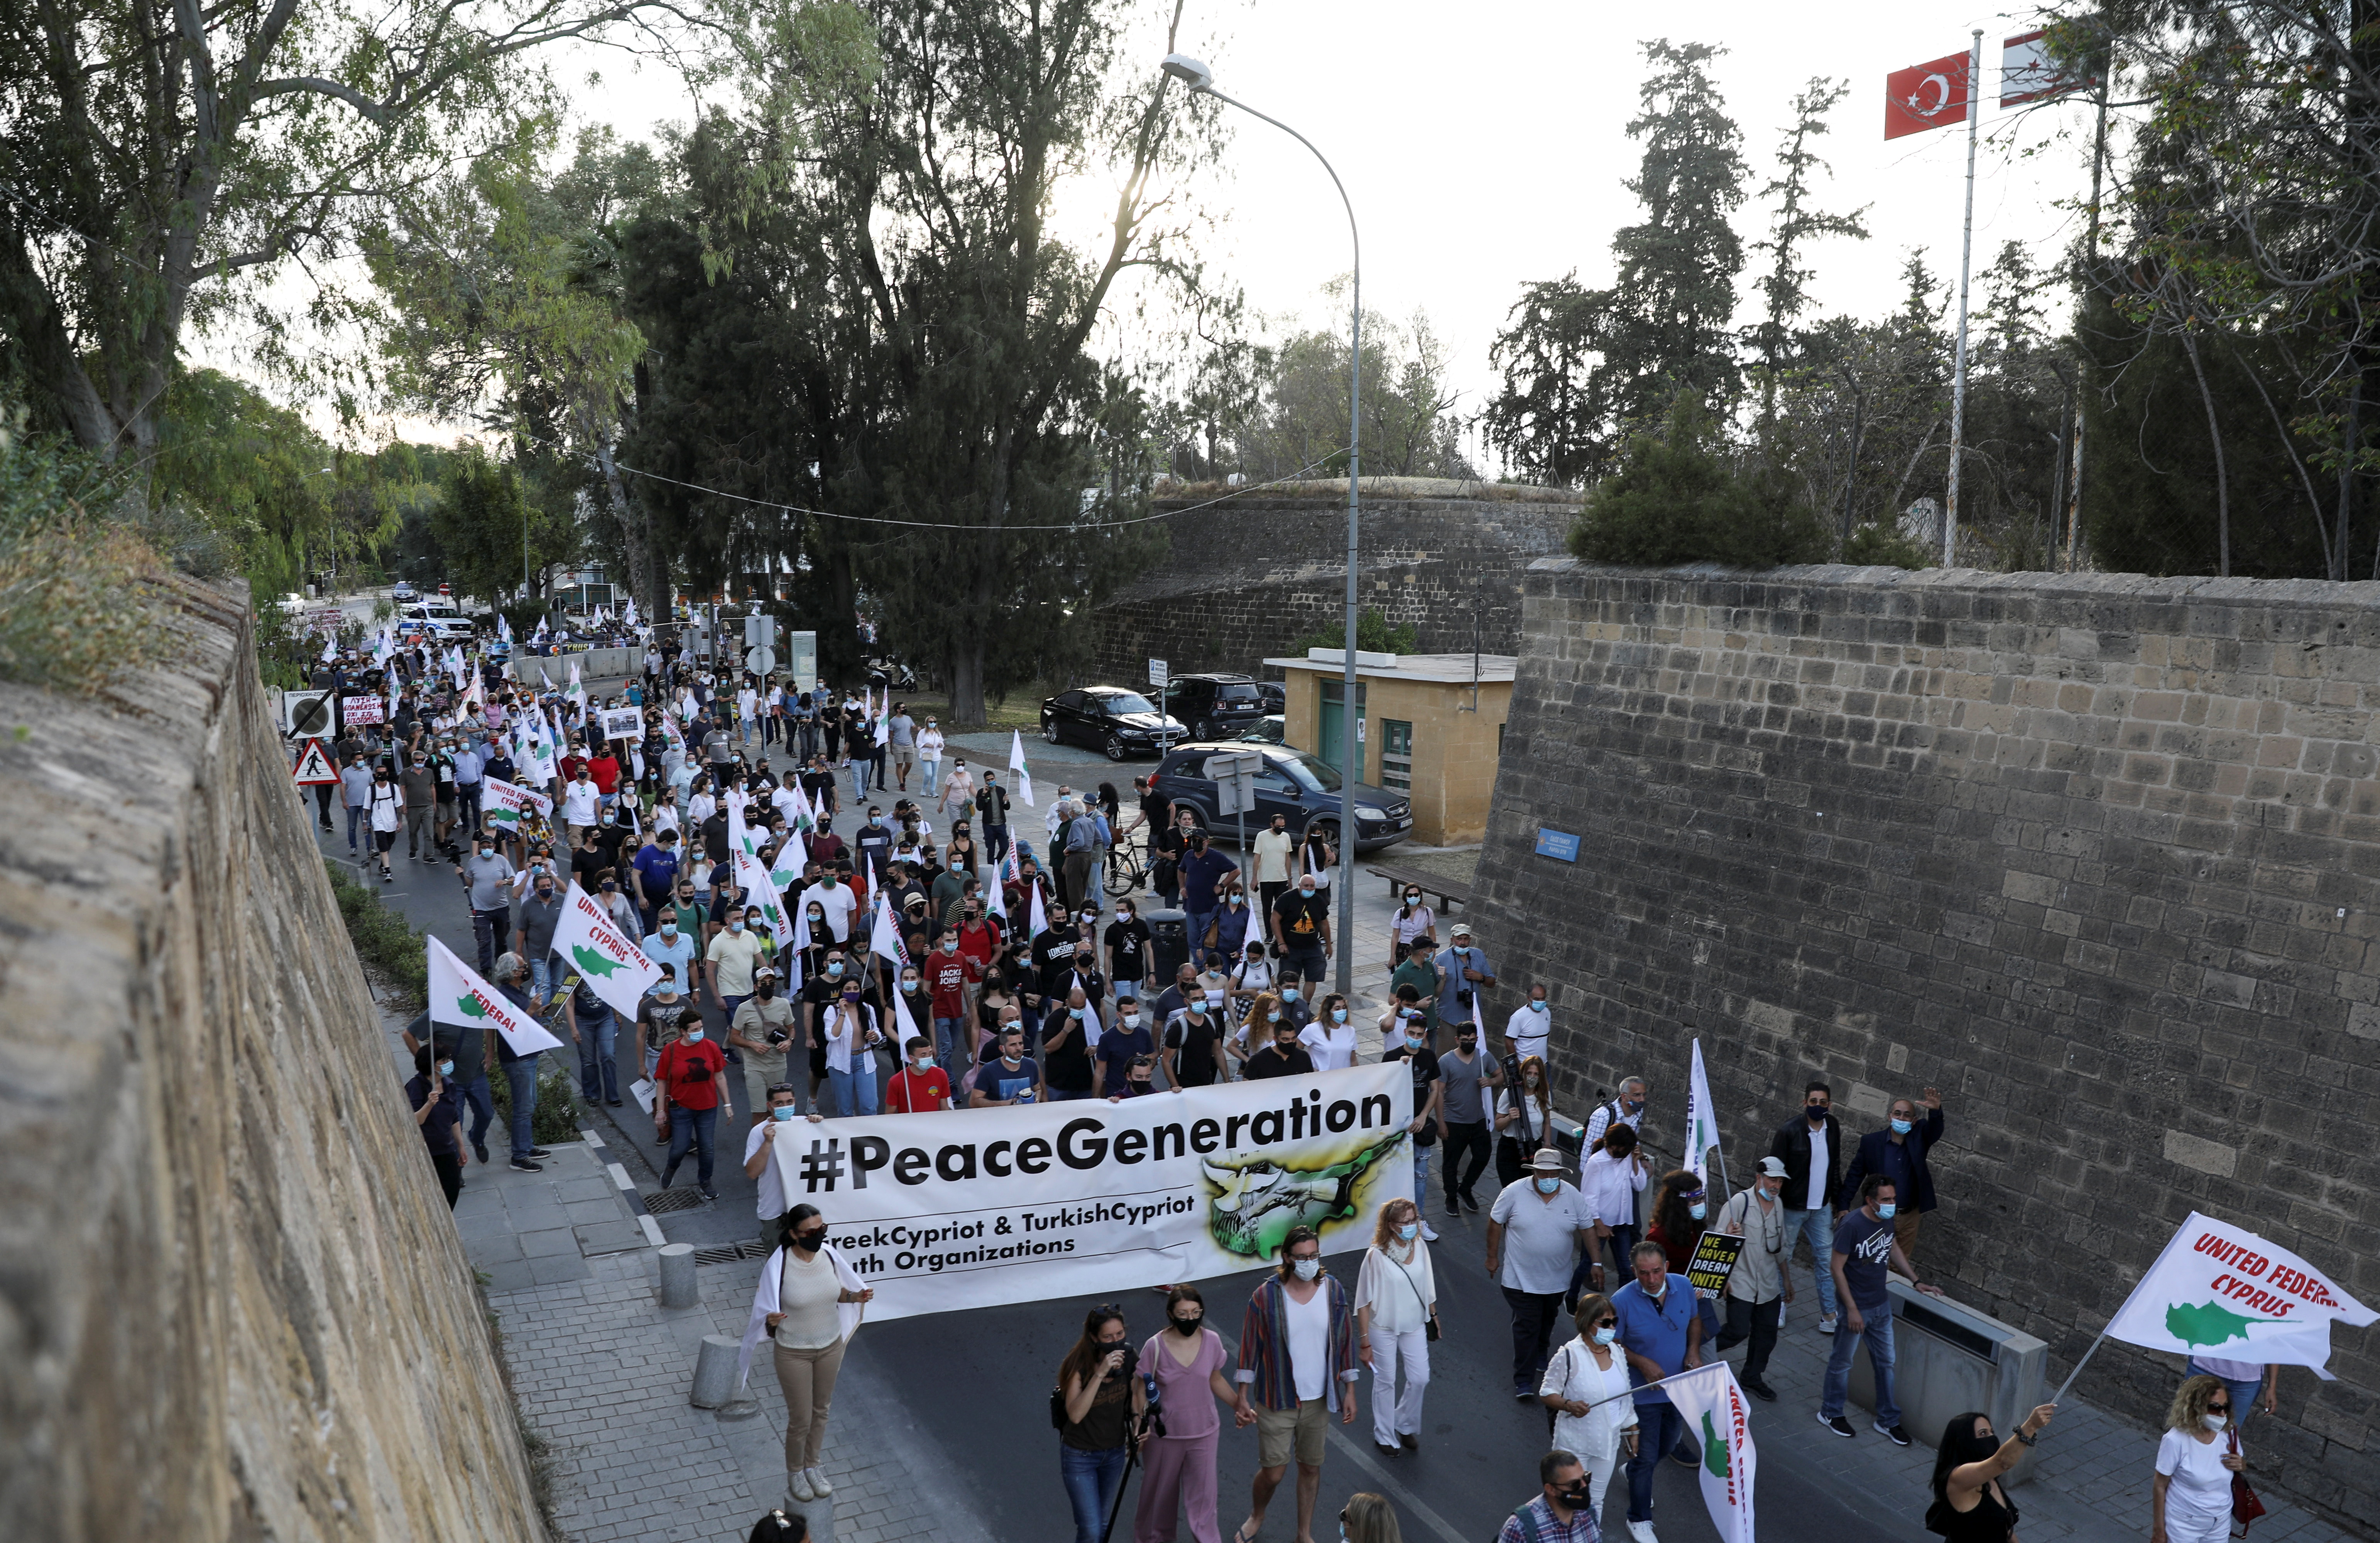 Grekcyprioter marscherar fredligt under ett återföreningssamling längs de medeltida murarna som omger den delade huvudstaden Nicosia, Cypern den 24 april 2021. REUTERS / Yiannis Kourtoglou